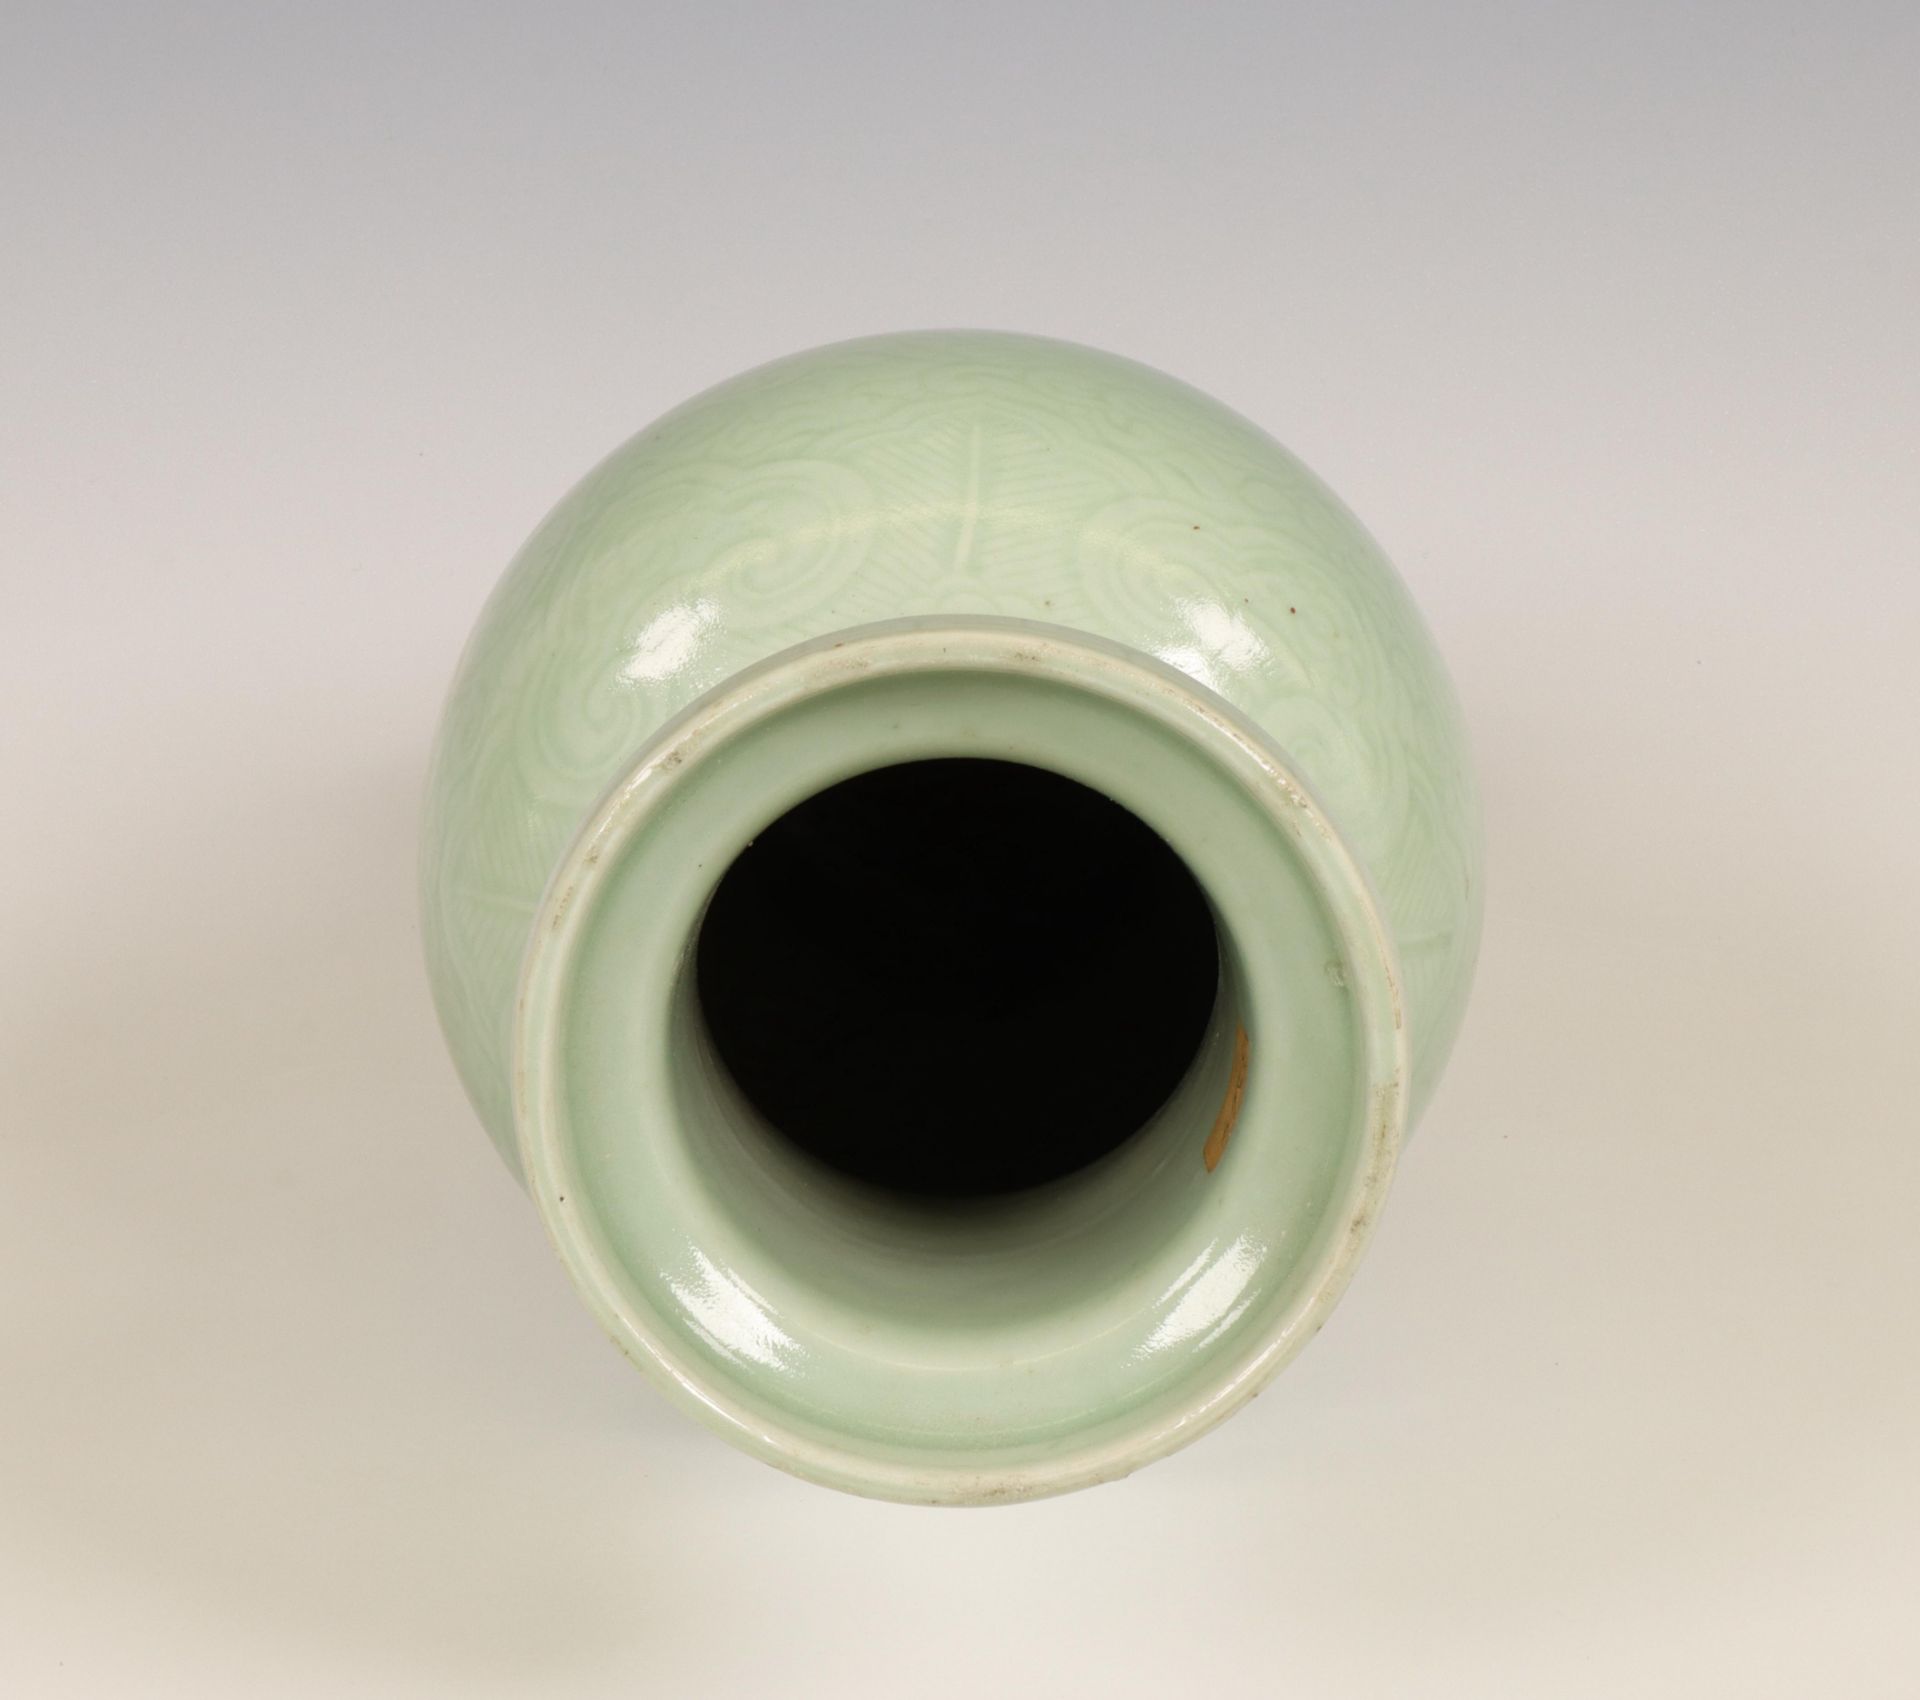 China, celadon-glazed baluster vase, 19th-20th century, - Image 4 of 6